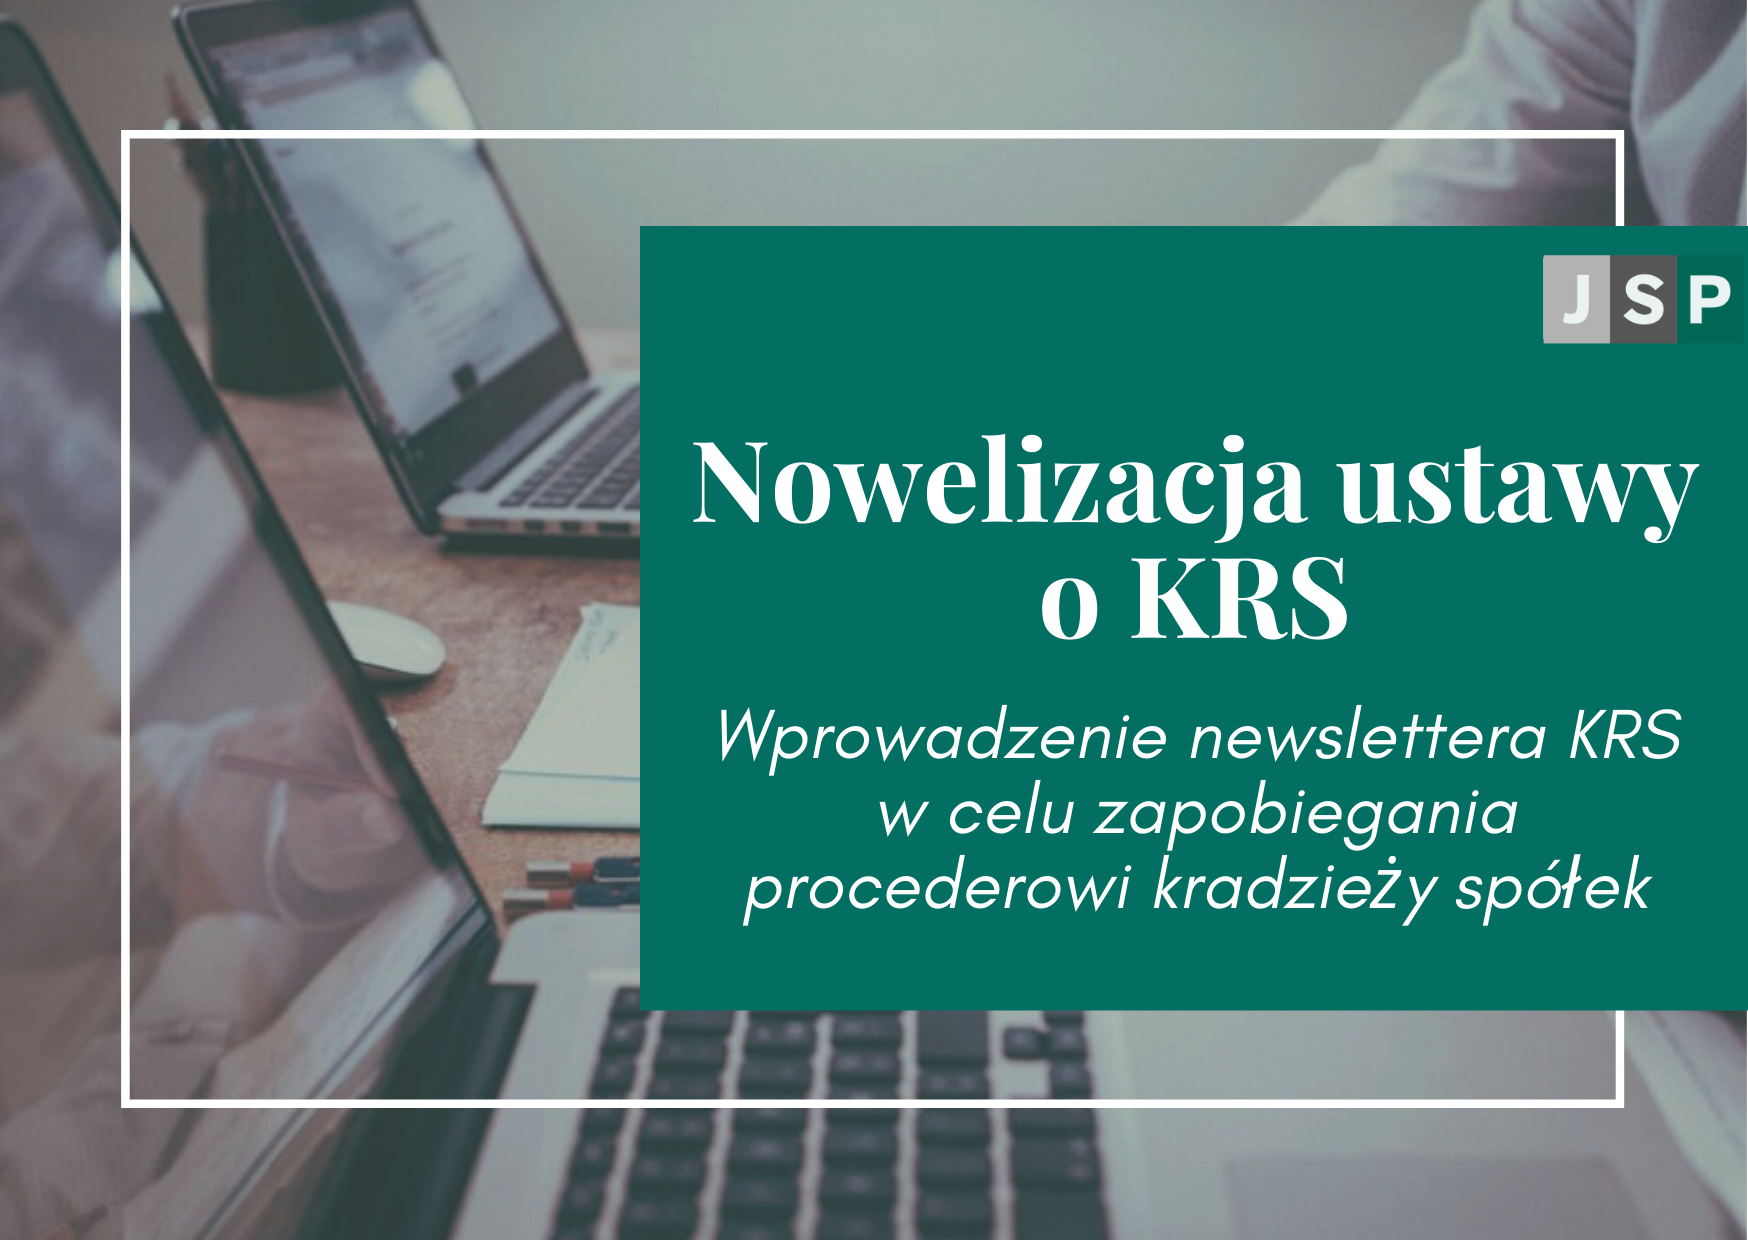 Nowelizacja ustawy o KRS - wprowadzenie newslettera KRS w celu zapobiegania procederowi kradzieży spółek